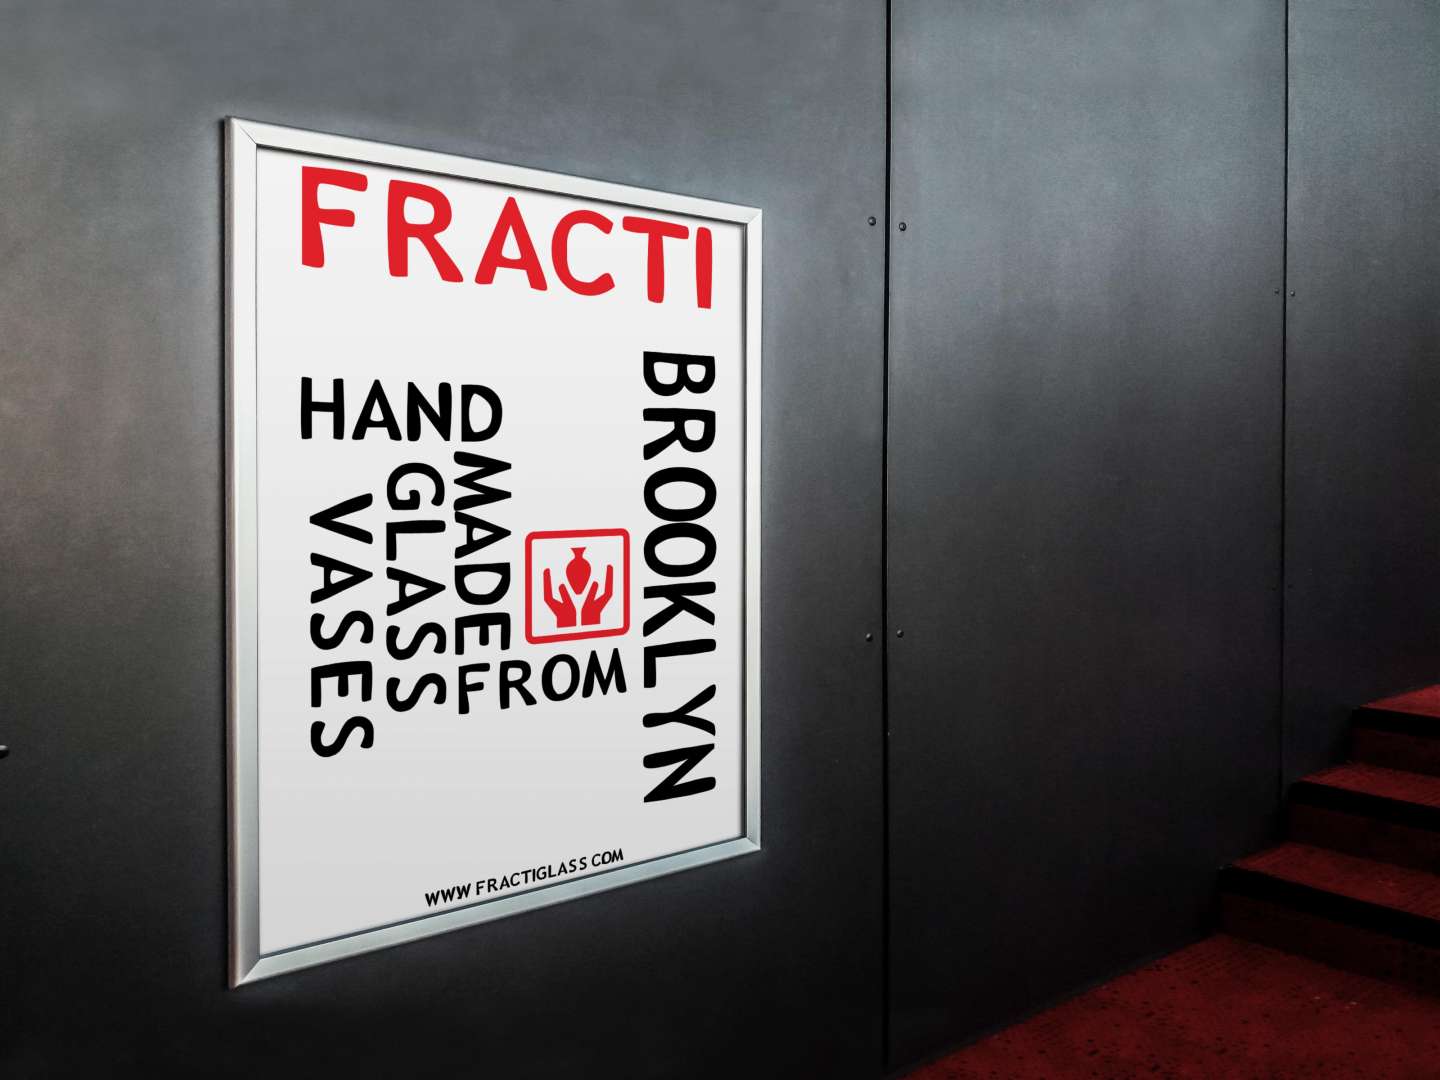 Fracti Branding